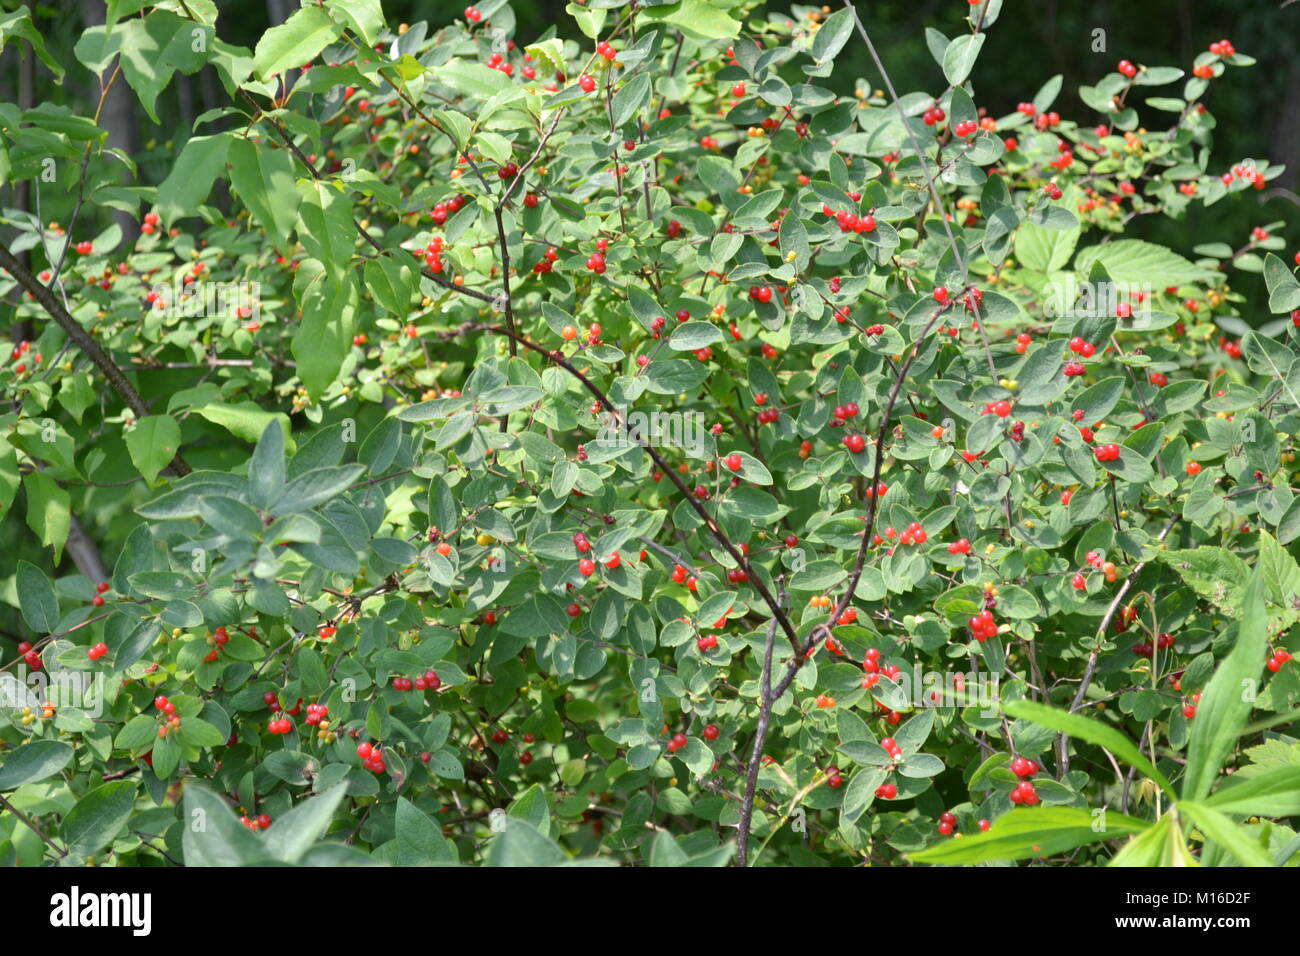 Wild berries growing in the woods Stock Photo